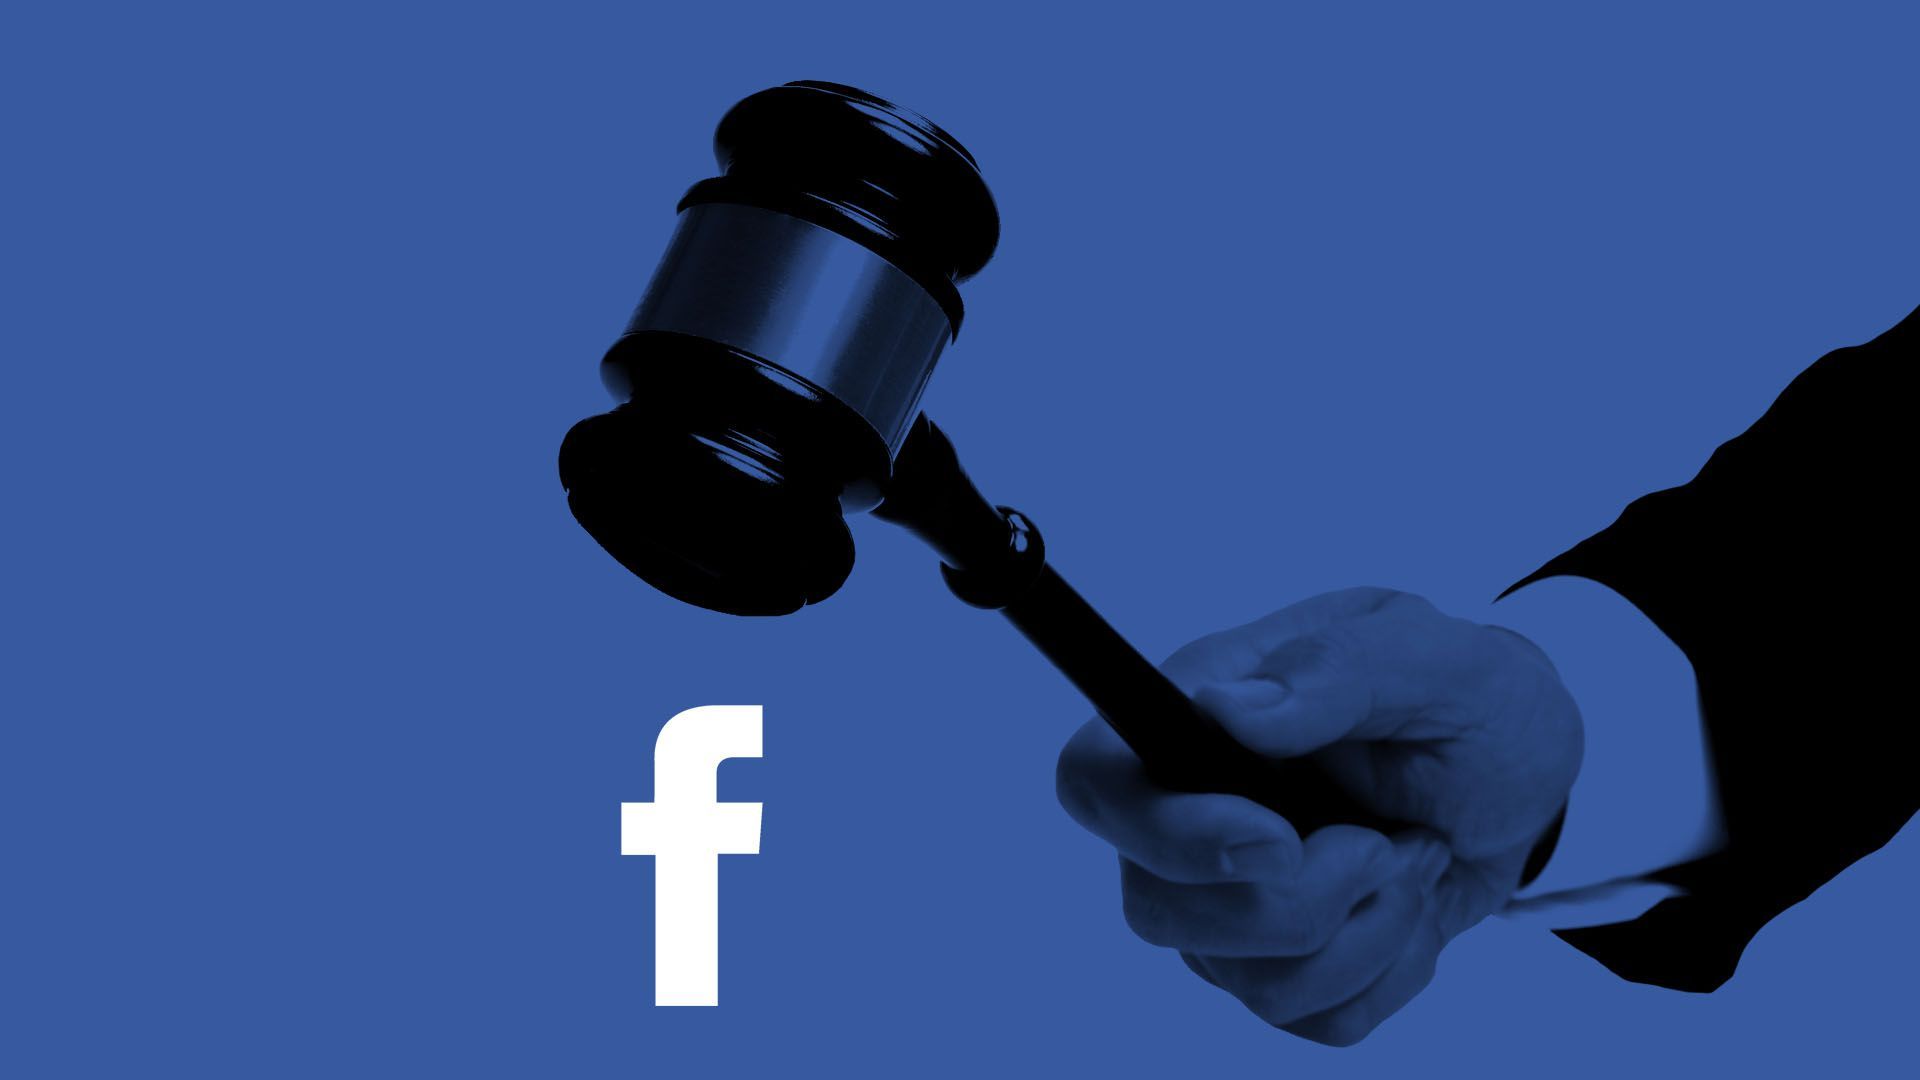 Illustration of a gavel landing on a Facebook logo